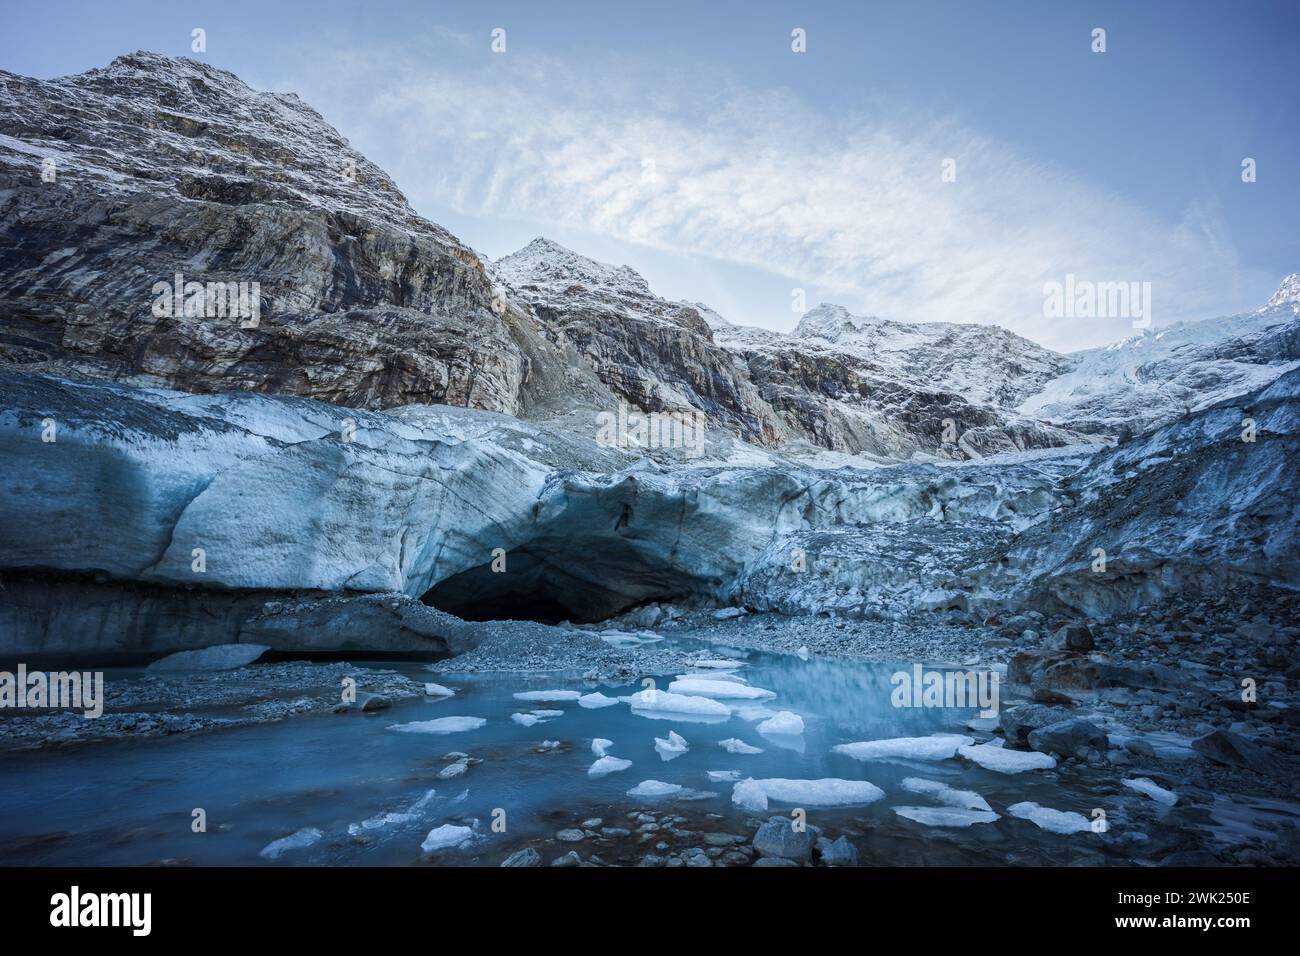 Vista del paesaggio invernale dell'ingresso di una grotta di ghiaccio circondata da montagne e piccoli iceberg Foto Stock